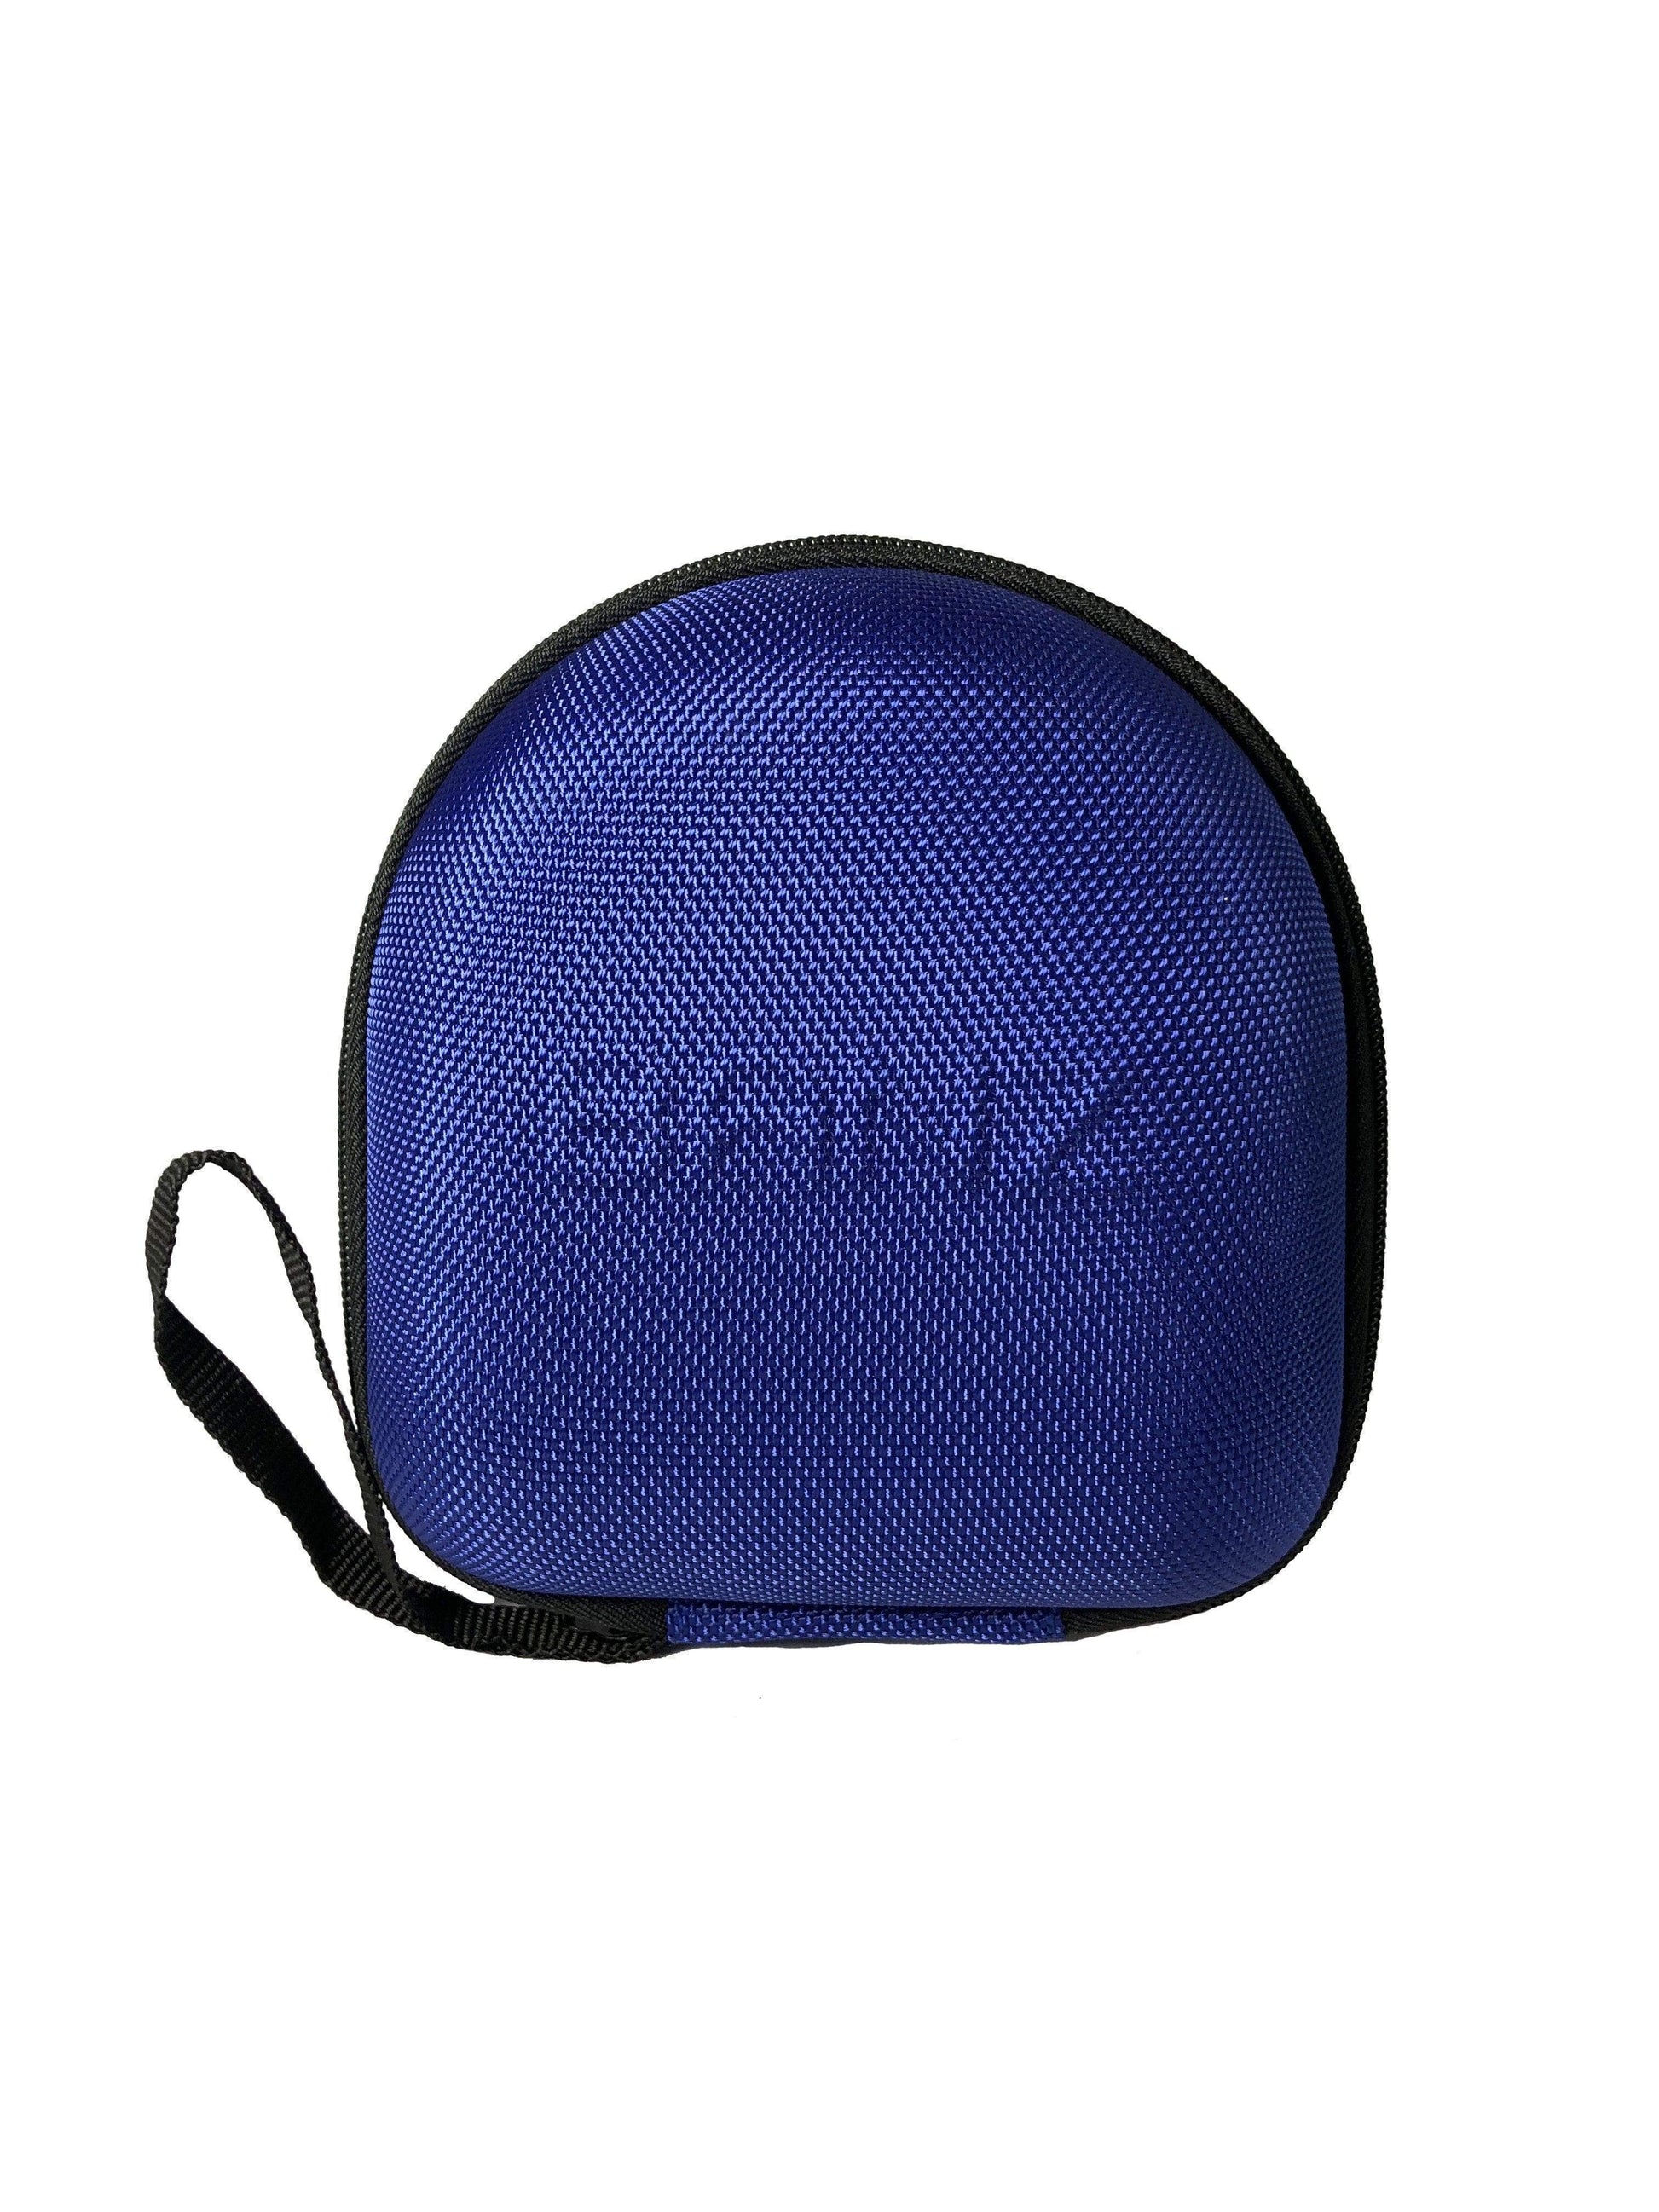 BANZ Earmuff Case Kids Earmuffs ZeeCase Lapis